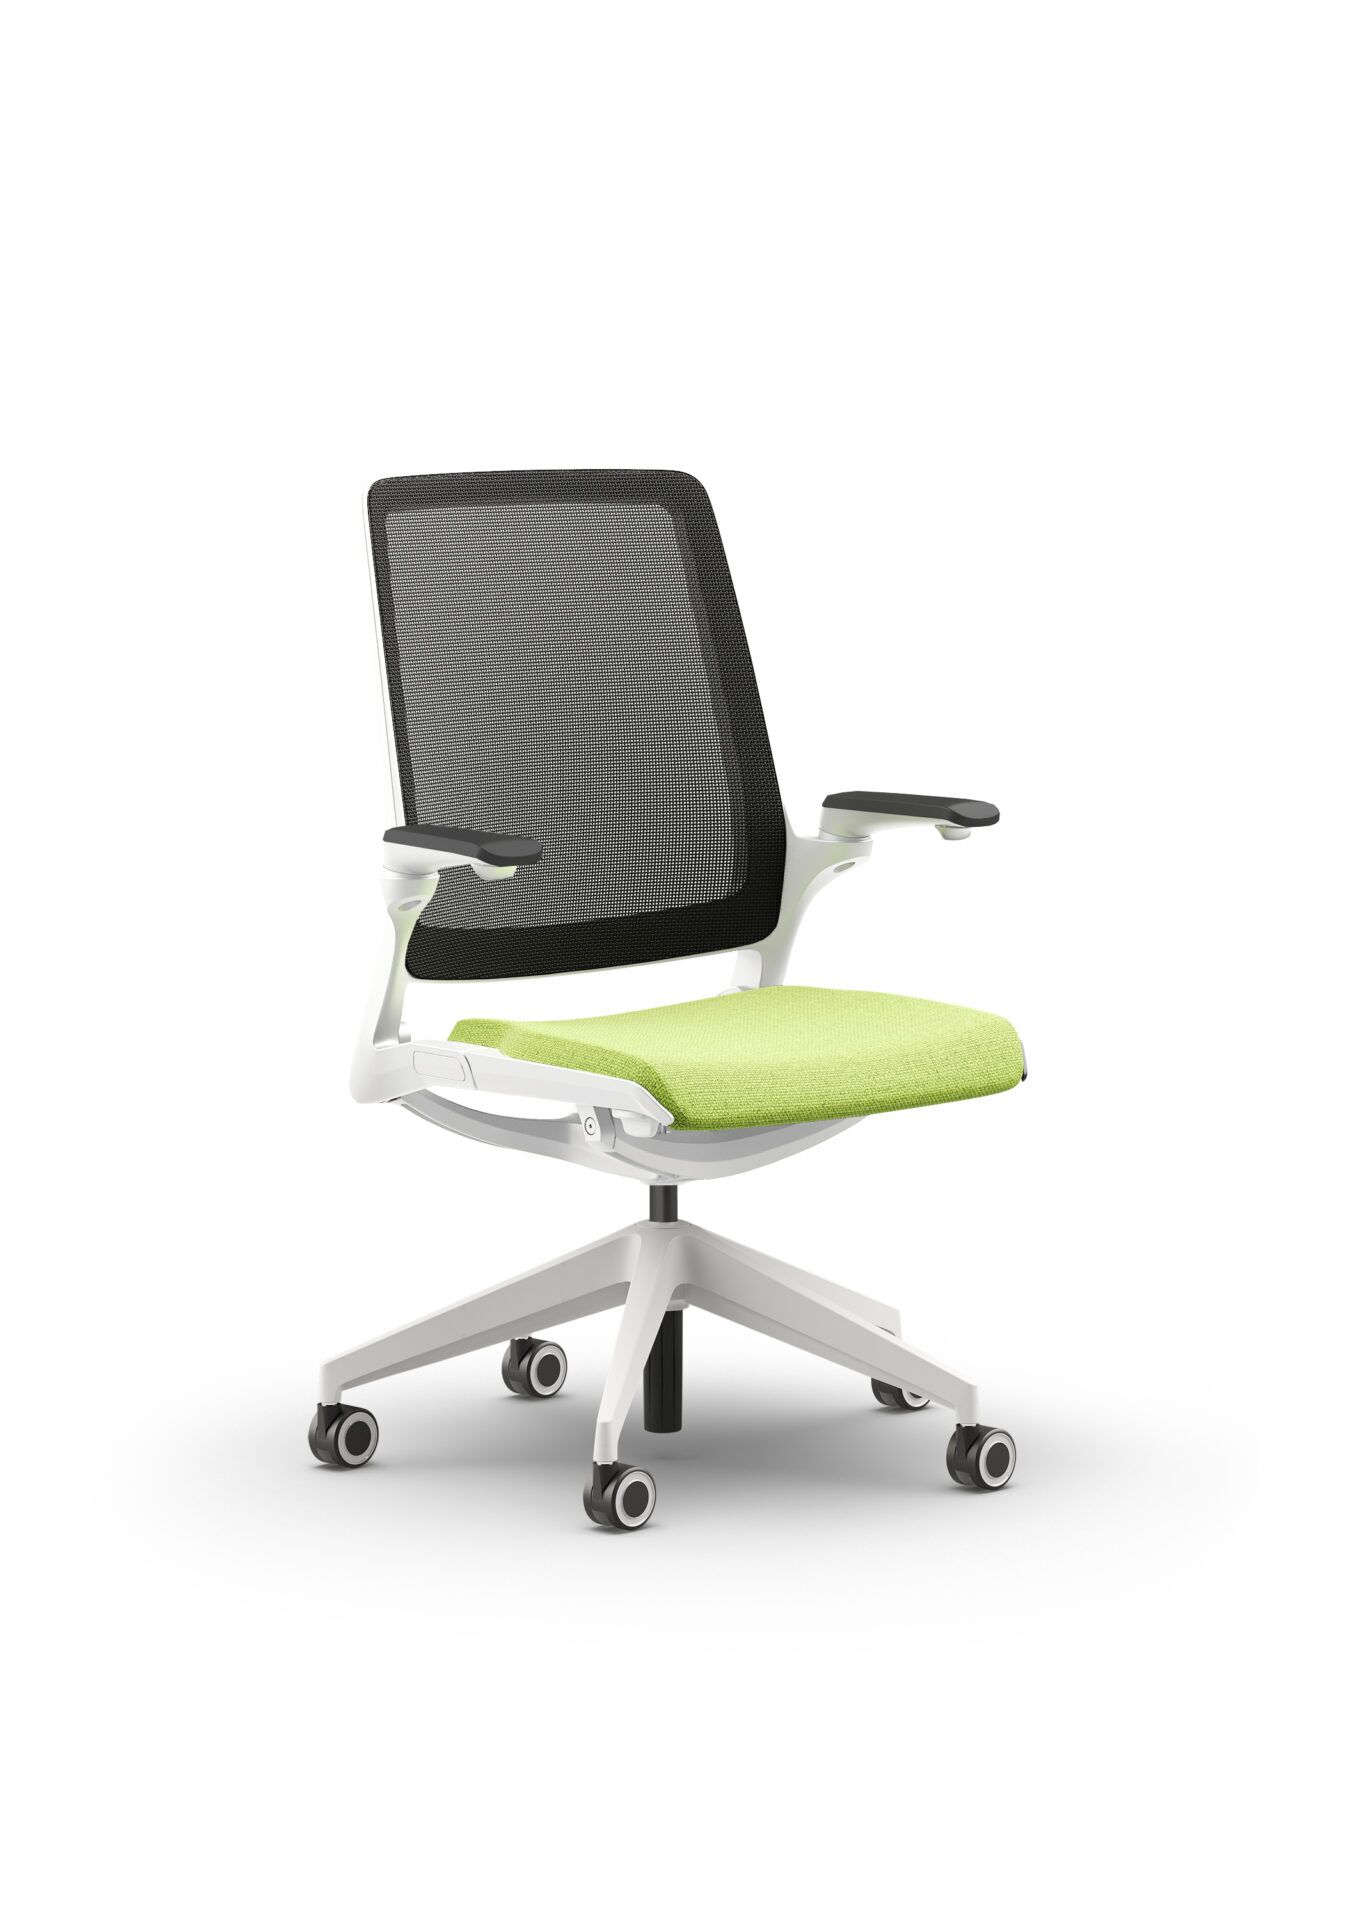 Biały fotel biurowy z zielonym siedzeniem Ob smart - widoczny po skosie od przodu zdjęcie 3